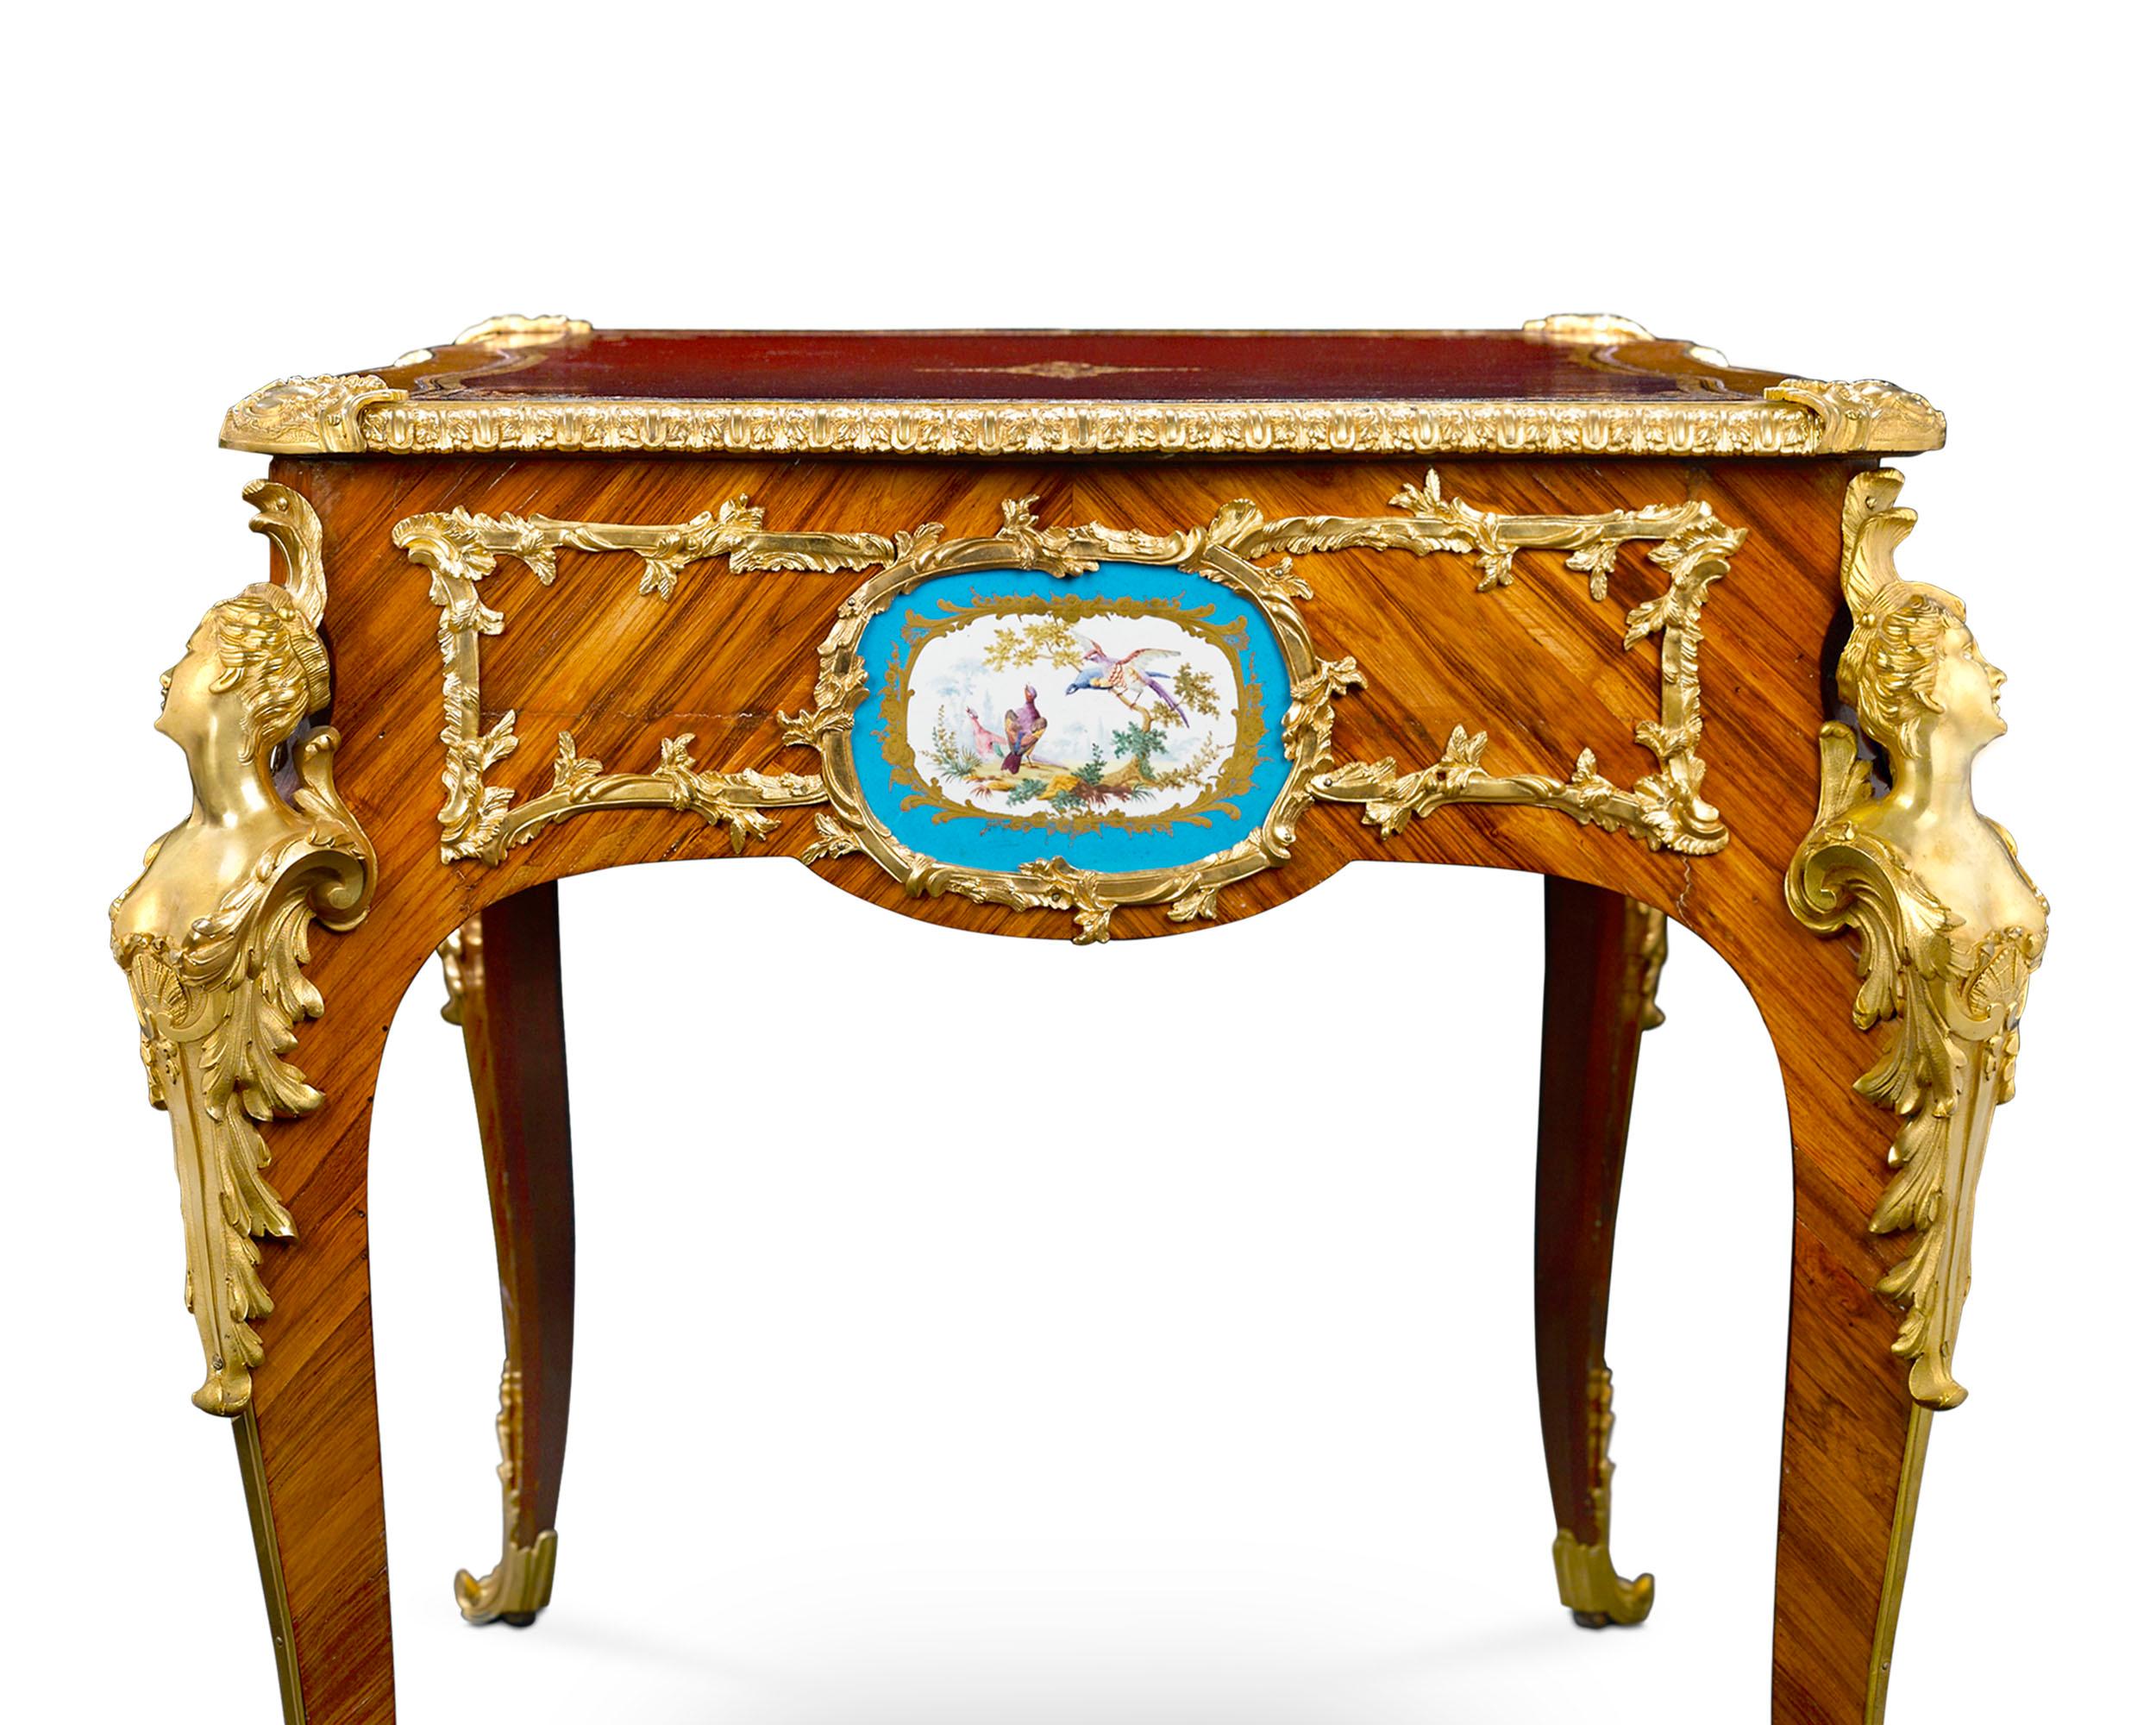 Forme et fonction convergent dans cet exceptionnel bureau plat de style Louis XV orné de huit élégantes plaques en porcelaine de Sèvres. Ces ravissantes plaques peintes à la main sur le thème des fleurs et des oiseaux sont encadrées par un réseau de